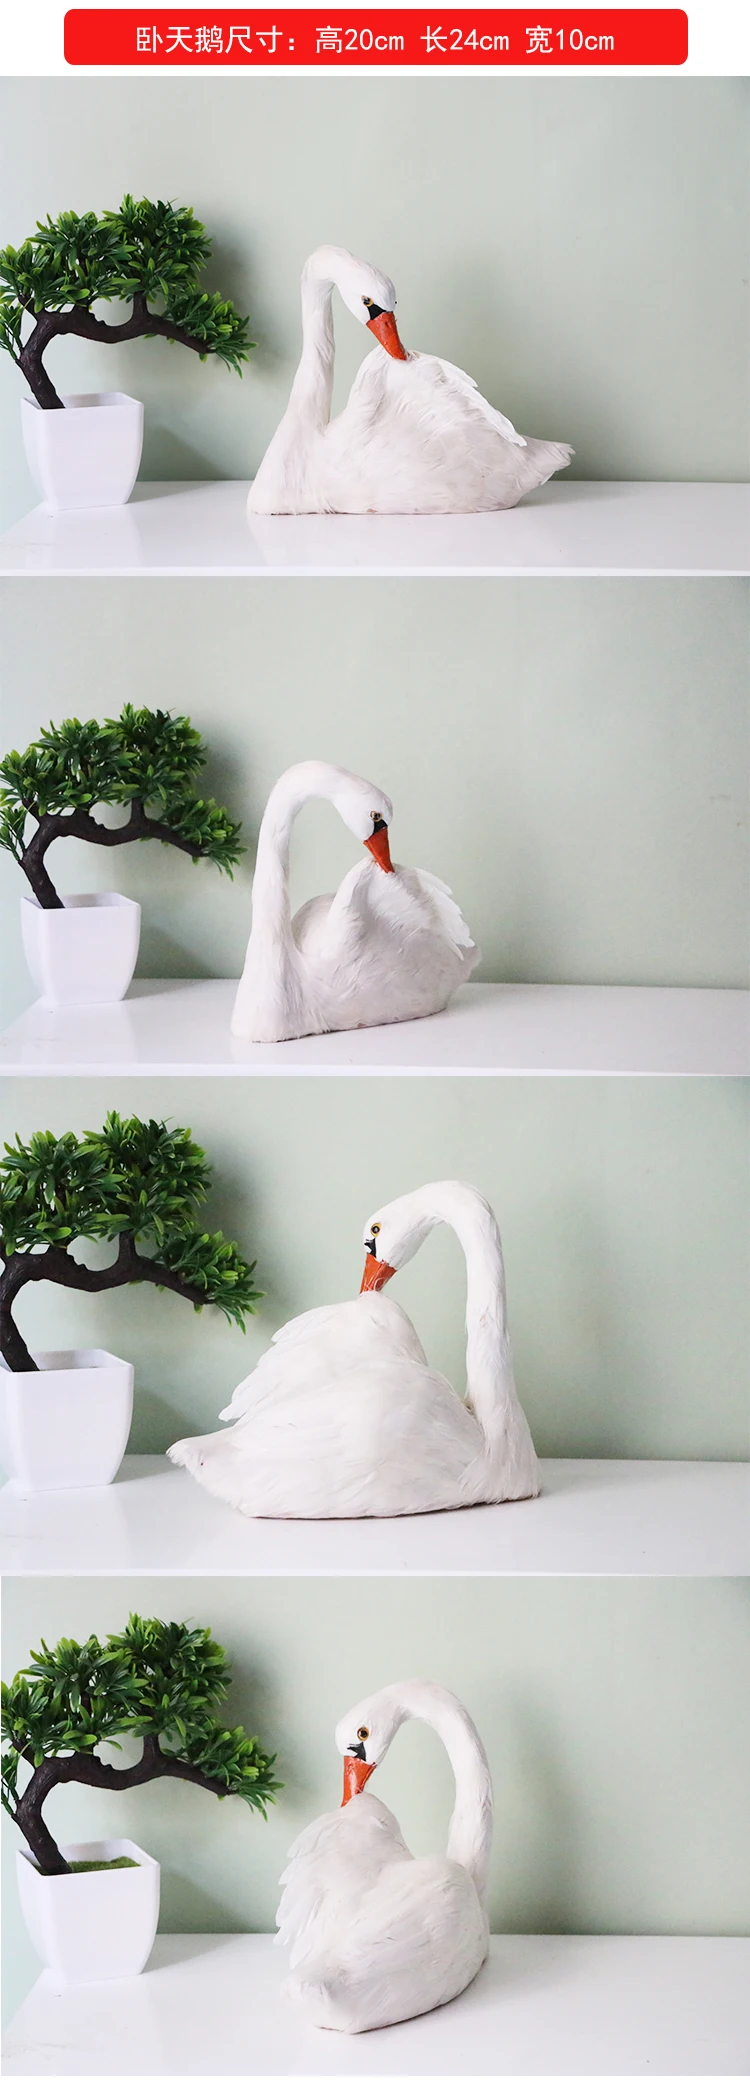 Большой 25x20 см Моделирование Белый лебедь модель пены и перья Лебедь птица Ремесленная украшения дома подарок s2670